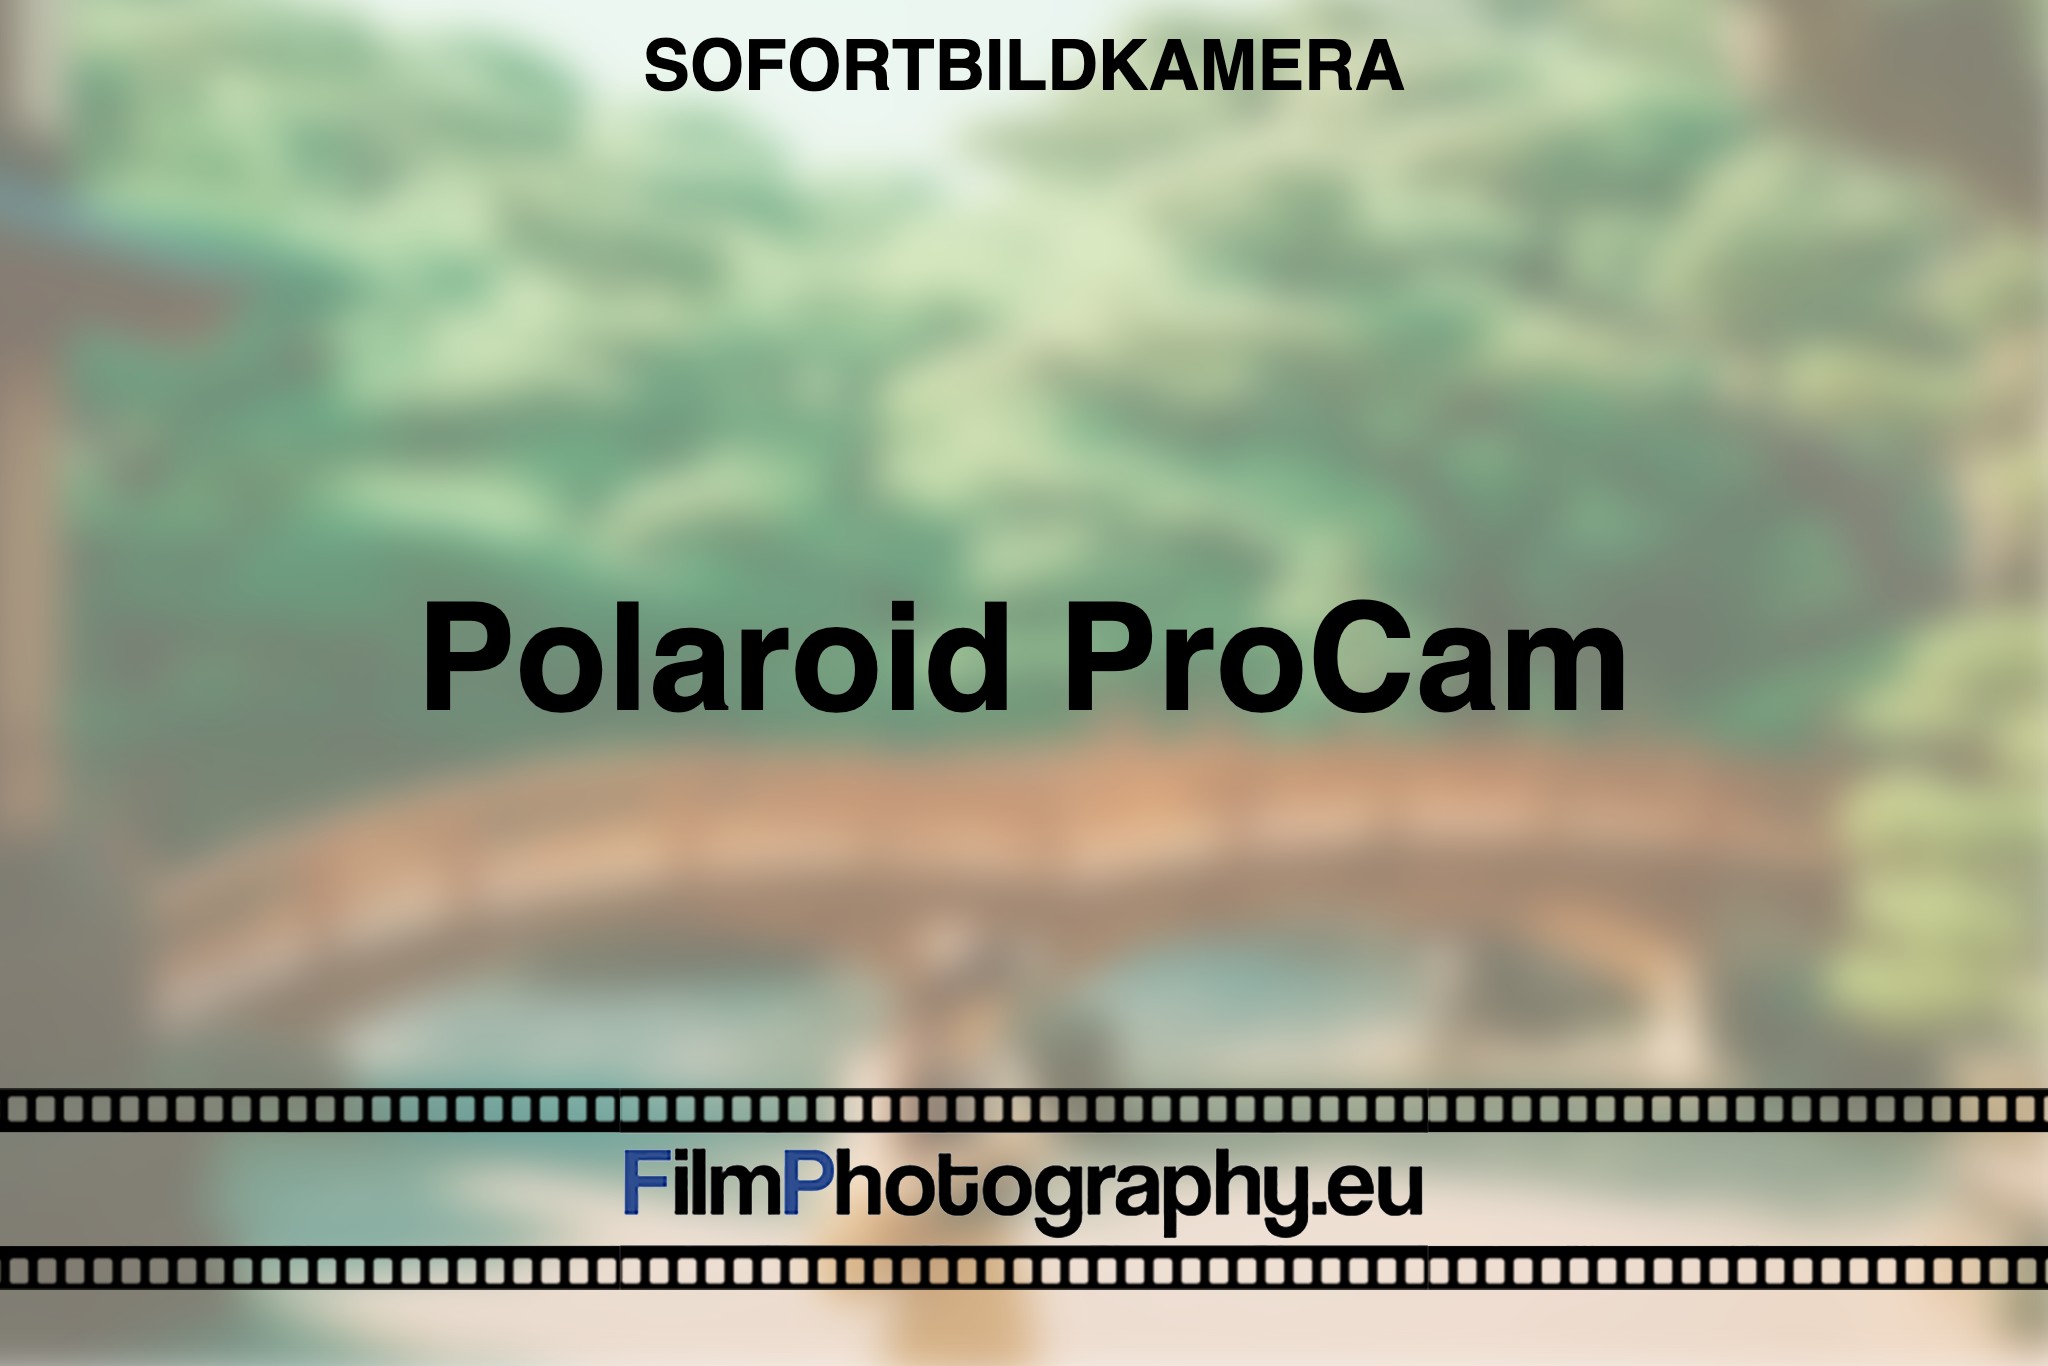 polaroid-procam-sofortbildkamera-bnv